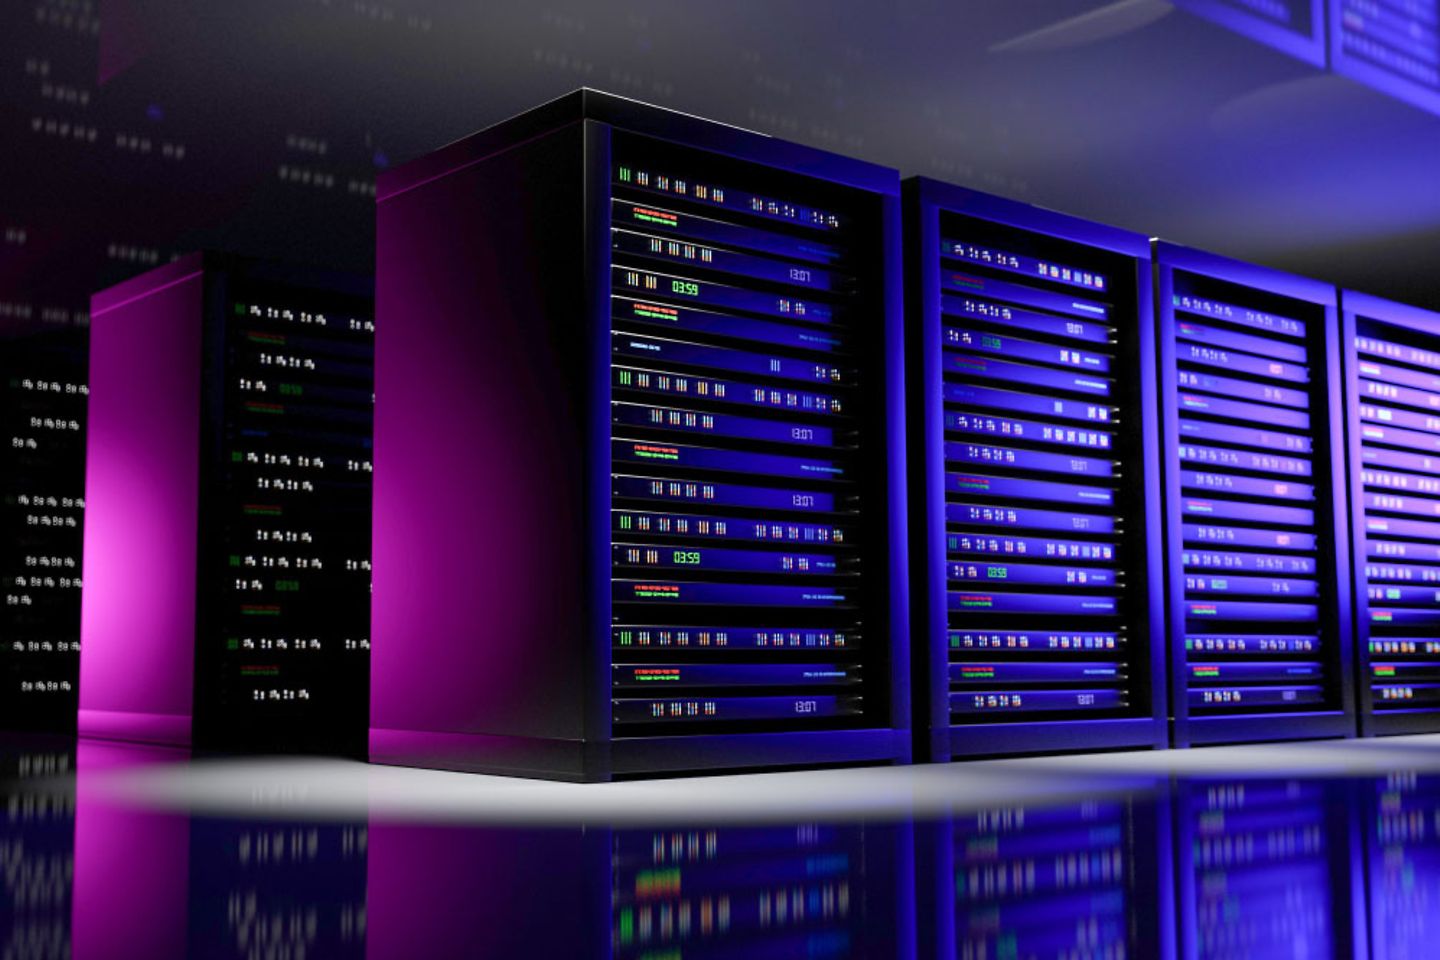 Server-Racks im Serverraum eines Cloud-Rechenzentrums in violett-blauem Licht.